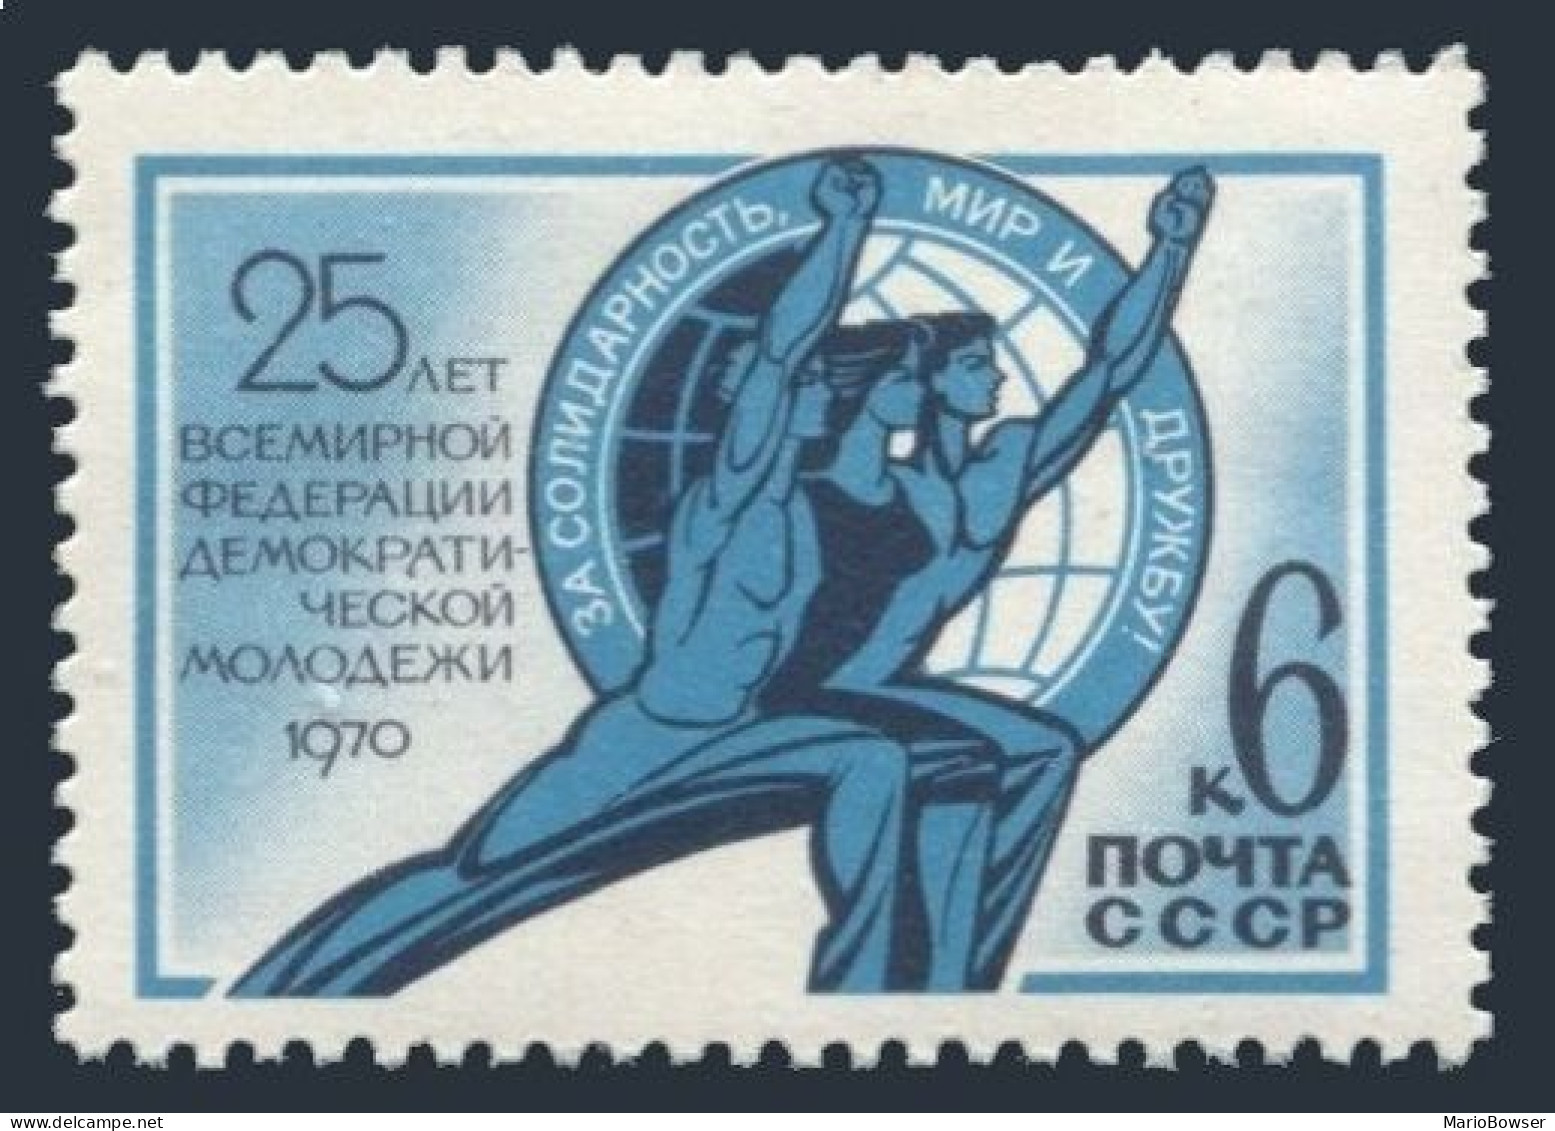 Russia 3739 Block/4,MNH.Mi 3768. World Federation Of Democratic Youth,1970. - Neufs